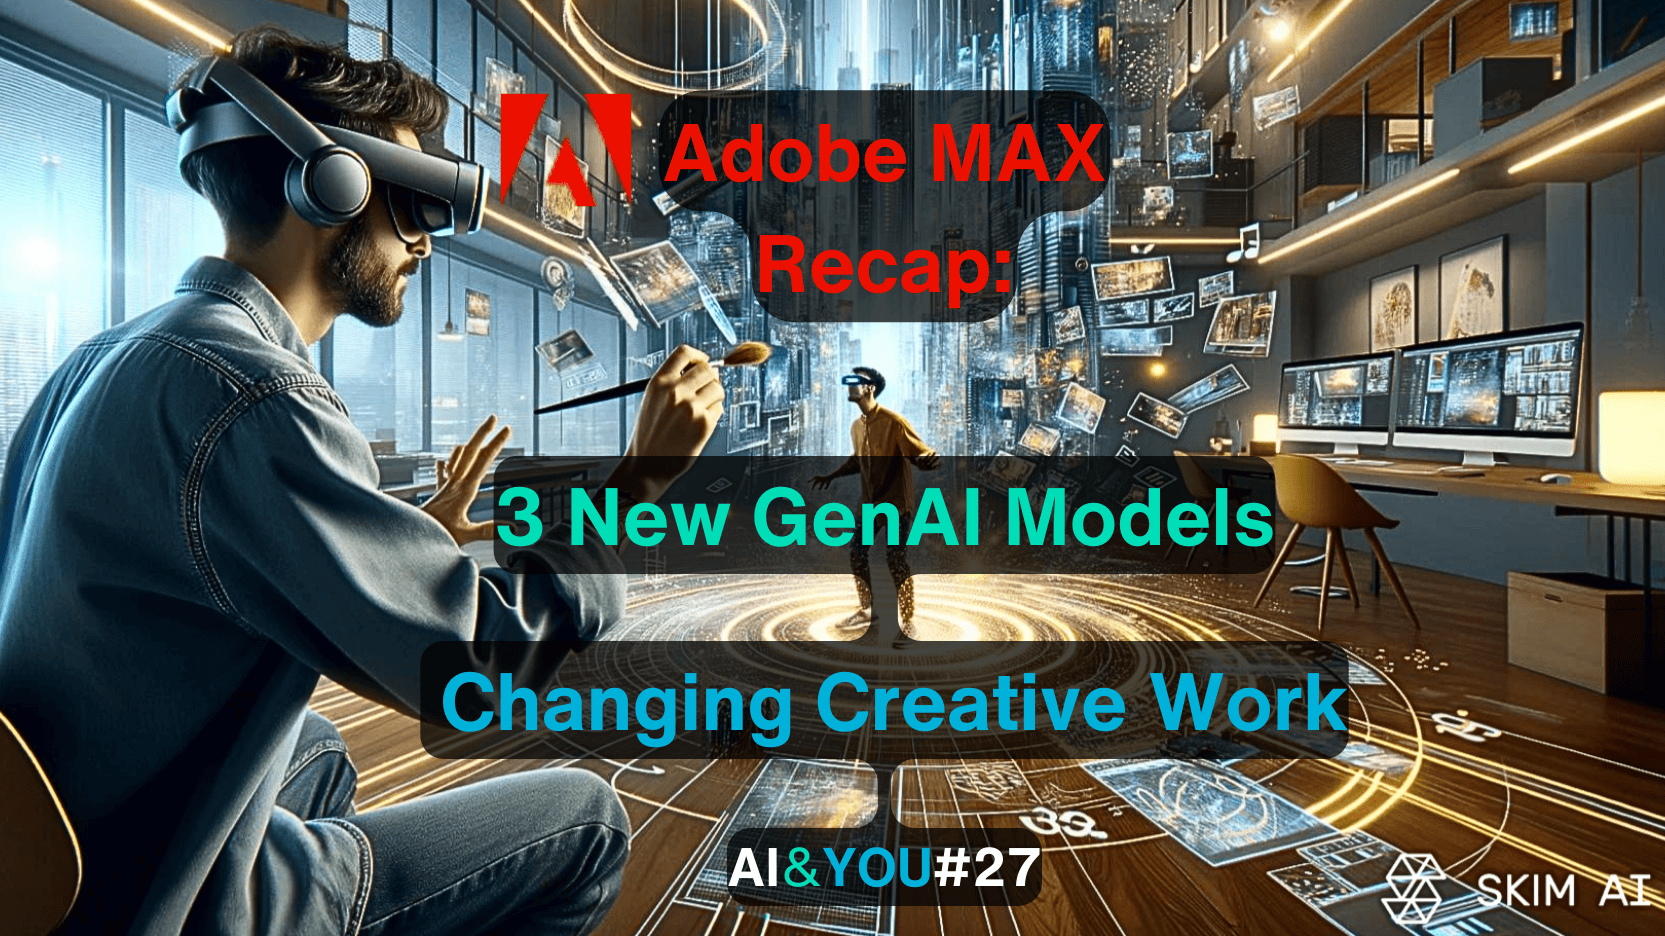 AI&YOU#27: Adobe Max використовує три важливі моделі генеративного ШІ